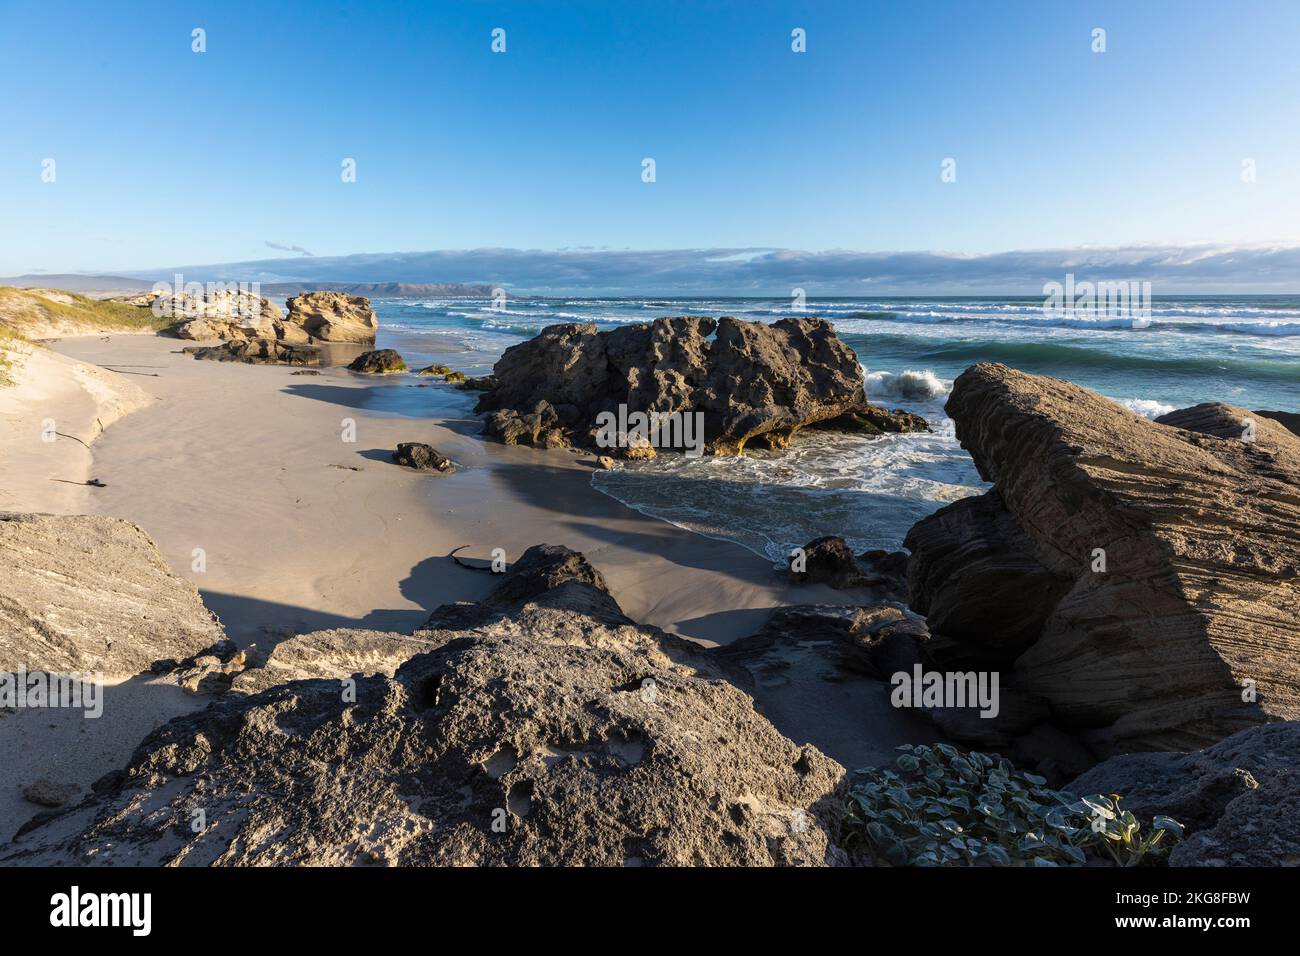 Afrique du Sud, Hermanus, vagues s'écrasant sur la formation de roche sur la plage Banque D'Images